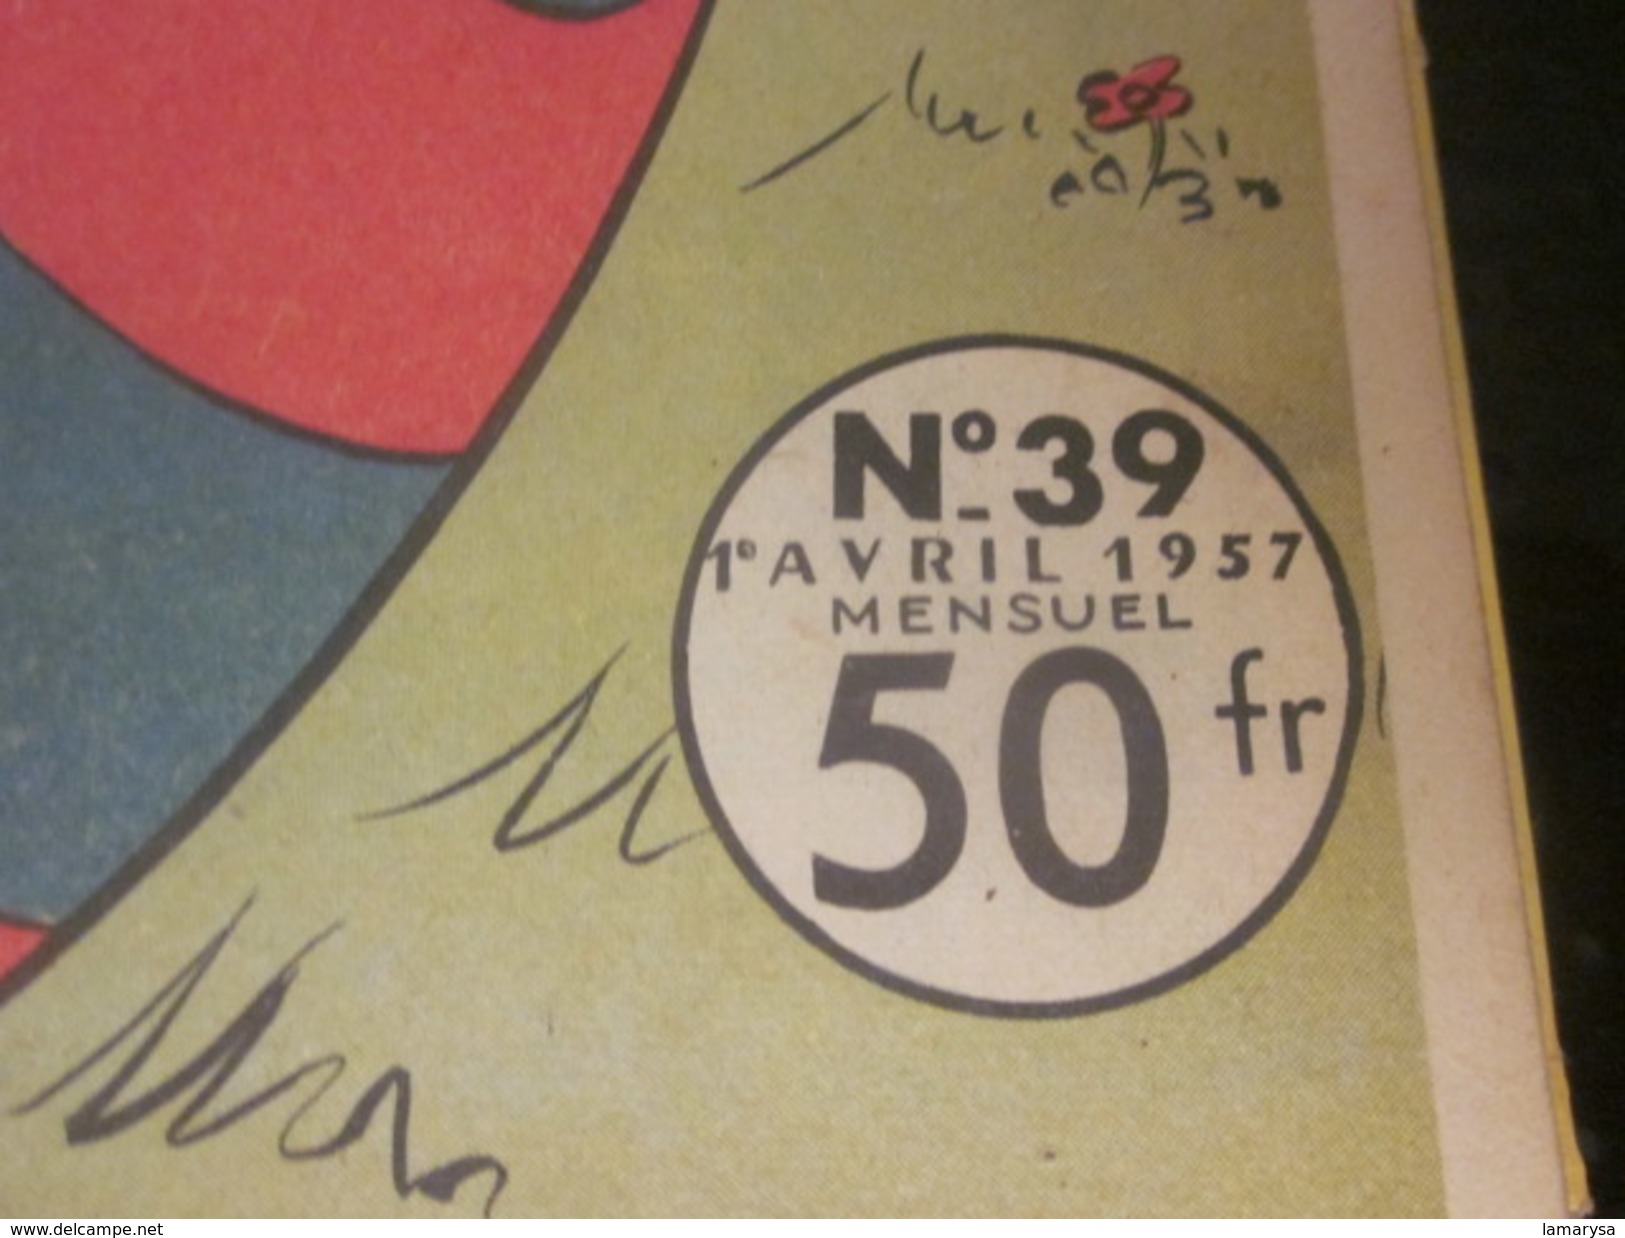 Vintage BD (en français) Séries Disney MICKEY EDITIONS COLBERT 5 RELIURES LES BELLES HISTOIRES DE WALT-DISNEY N°36 à 40